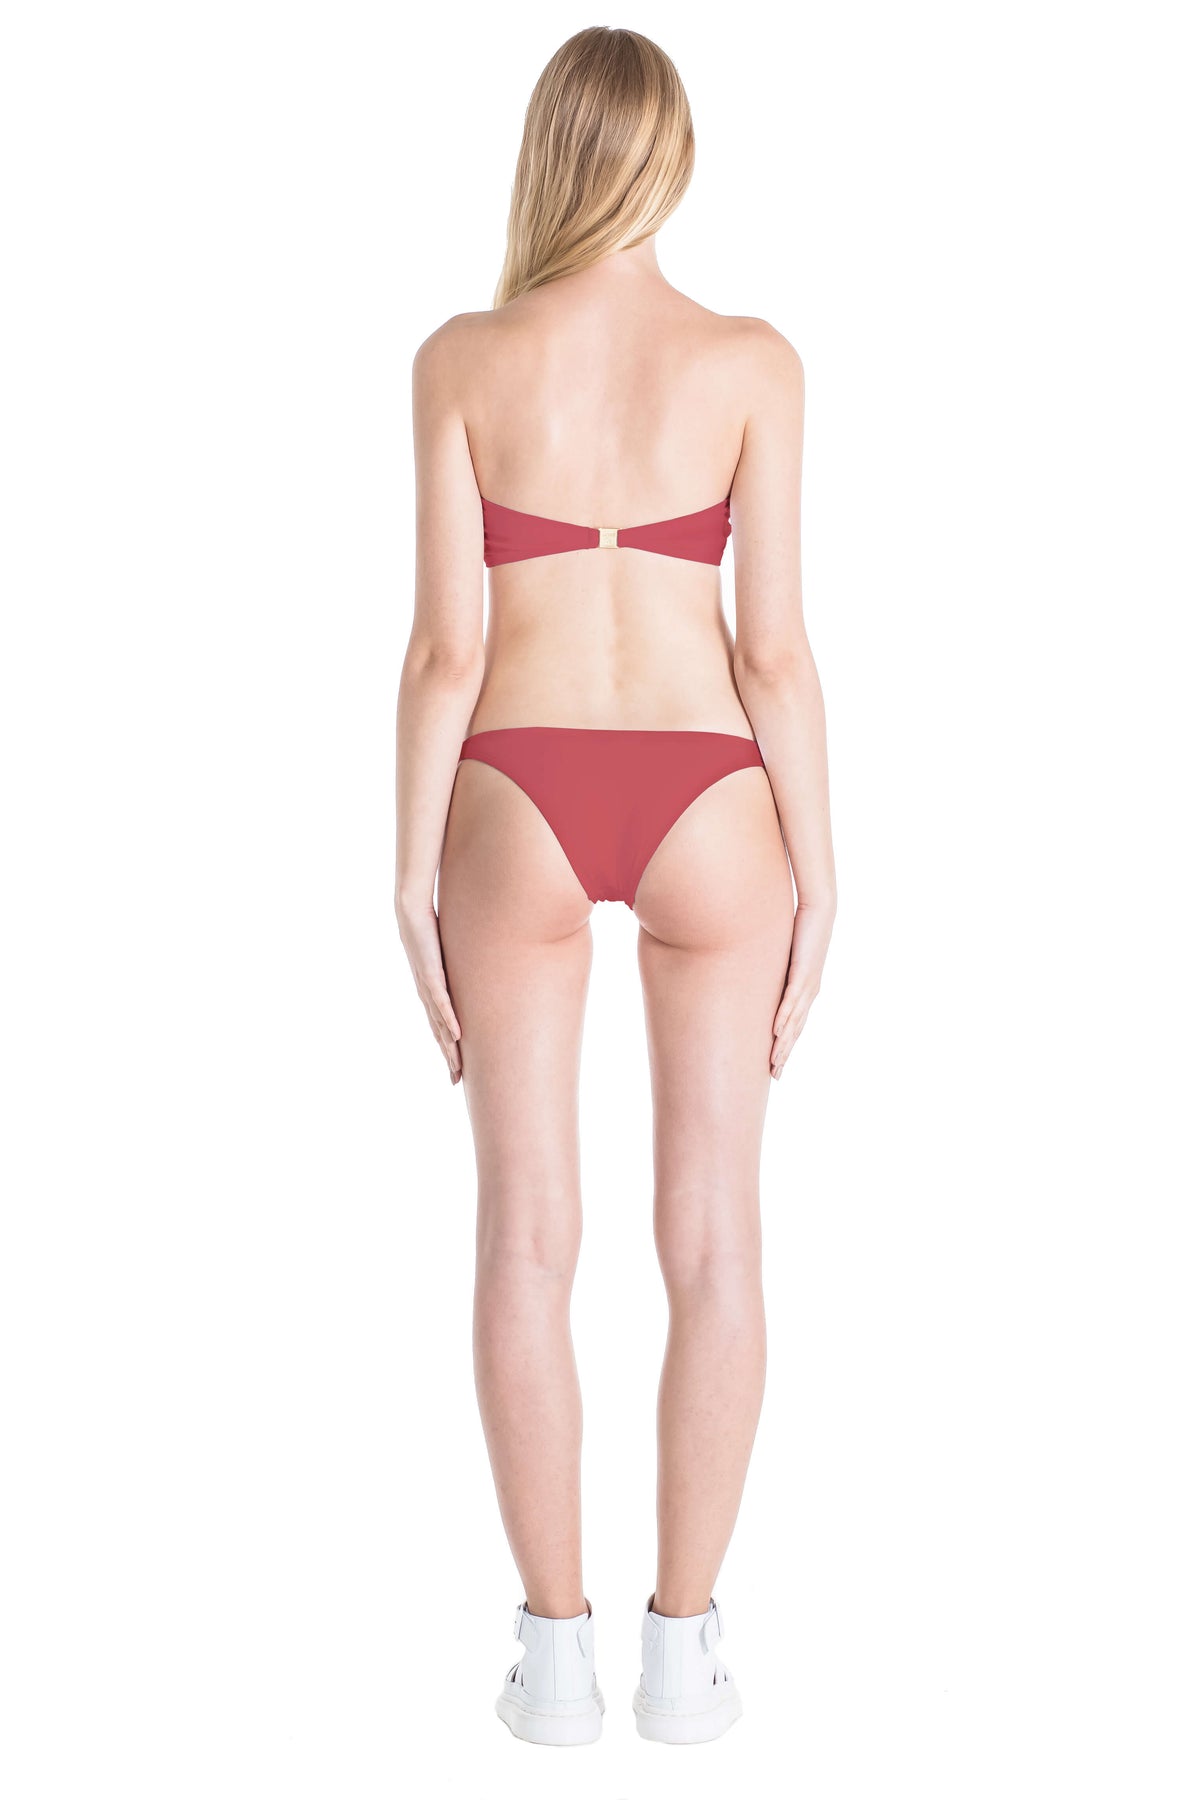 Back of Diane swimsuit bottom in Terracotta